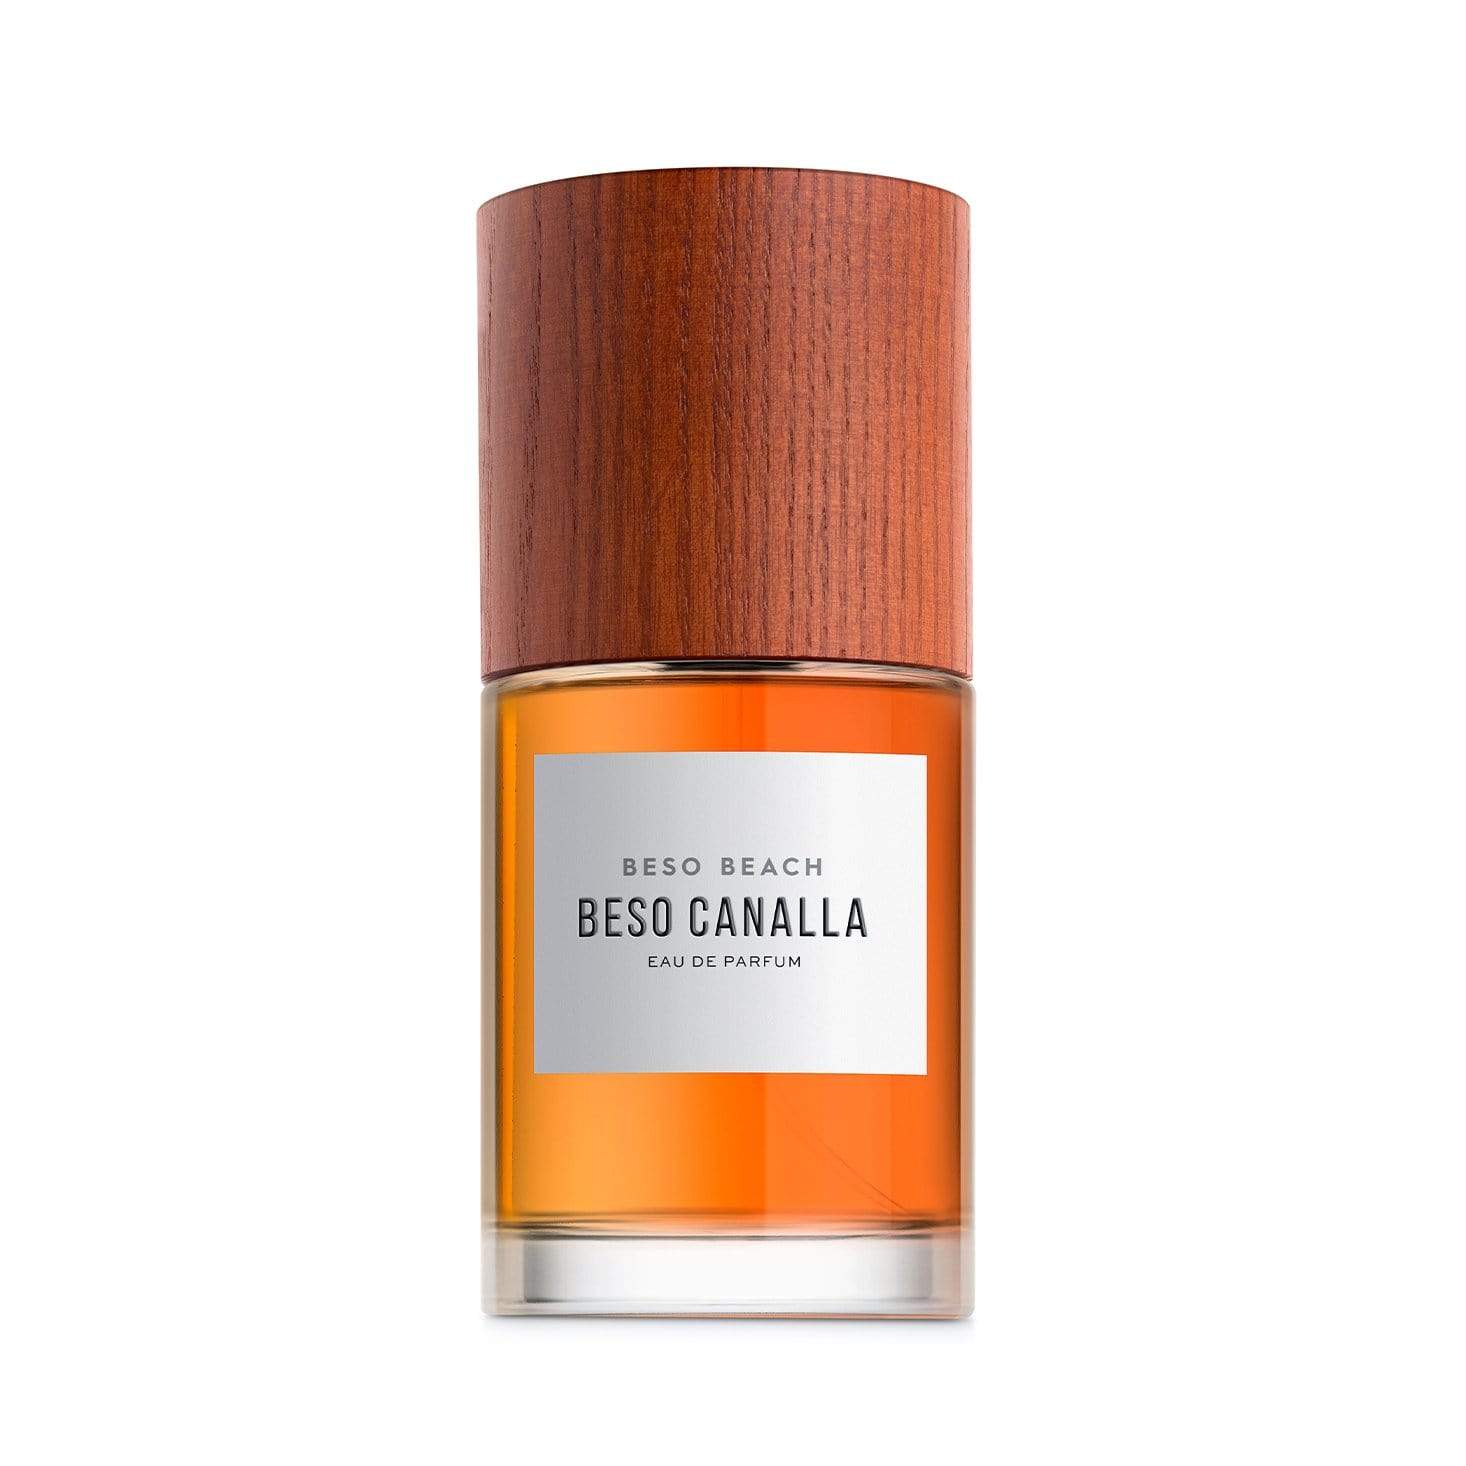 Beso Canalla Eau de Parfum - Men's Fragrance at Menzclub